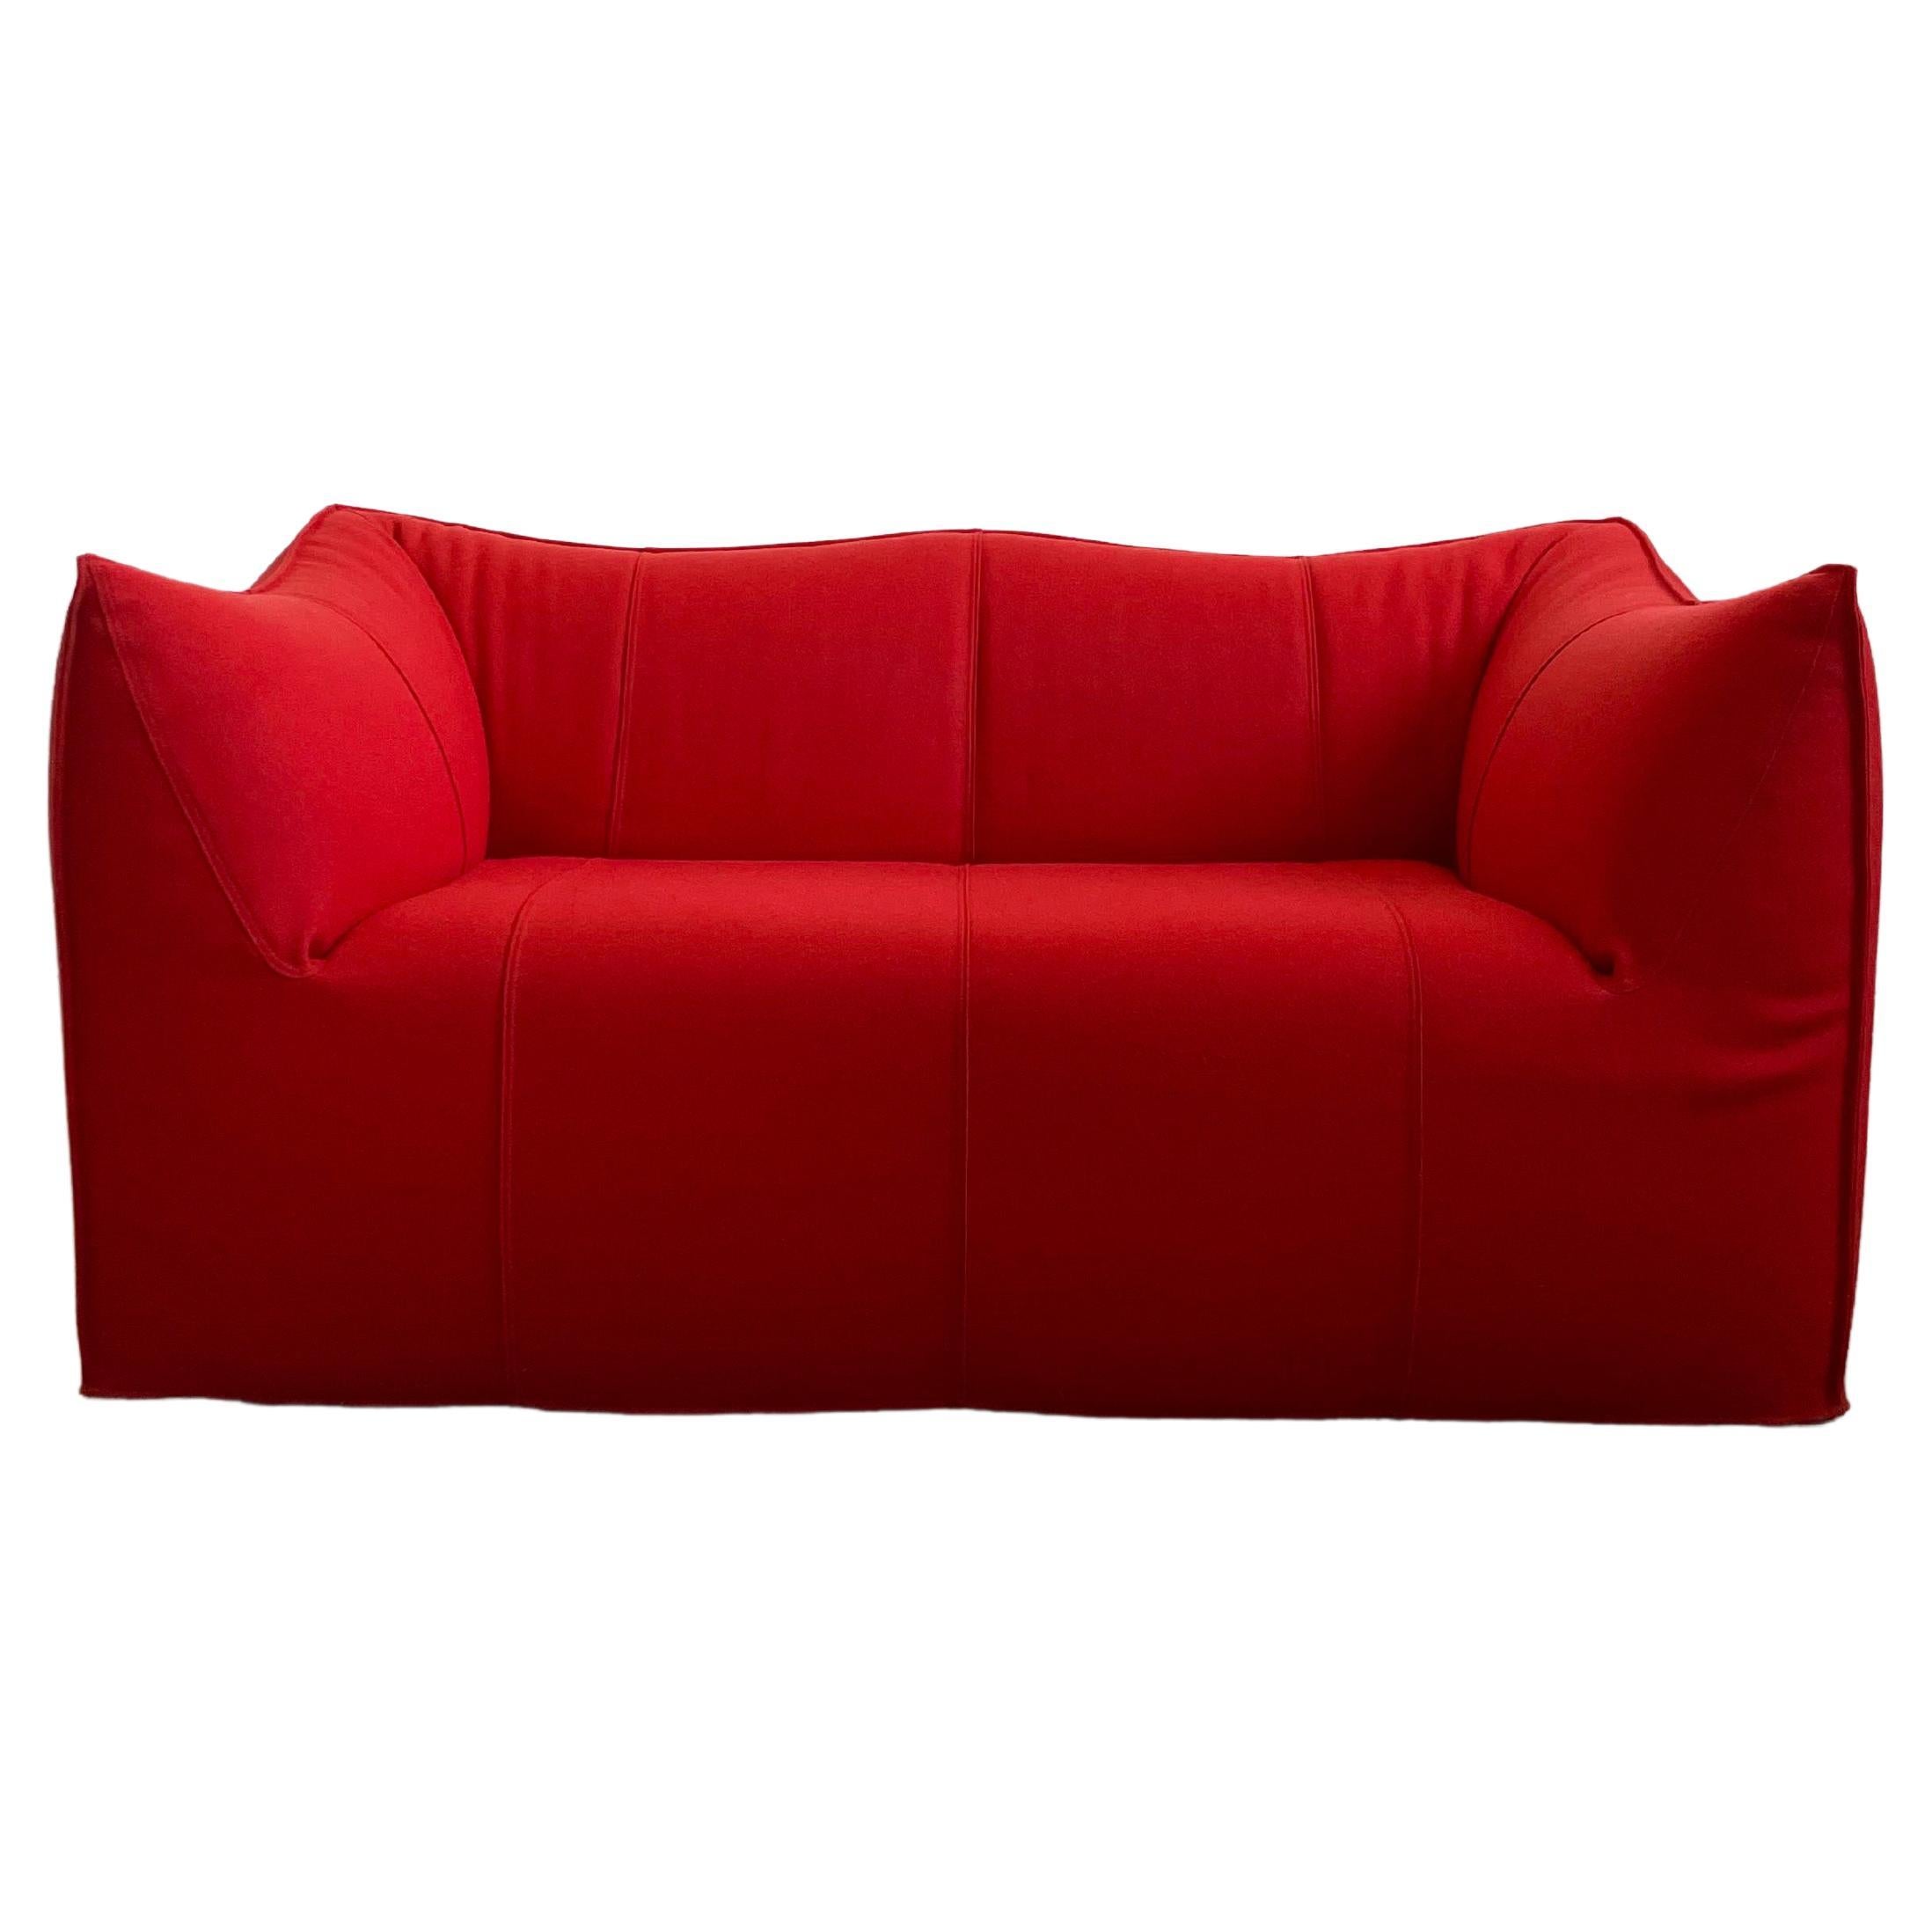 Mario Bellini Le Bambole ’07 Sofa B&B Italia in Red Wool, Removable Cover